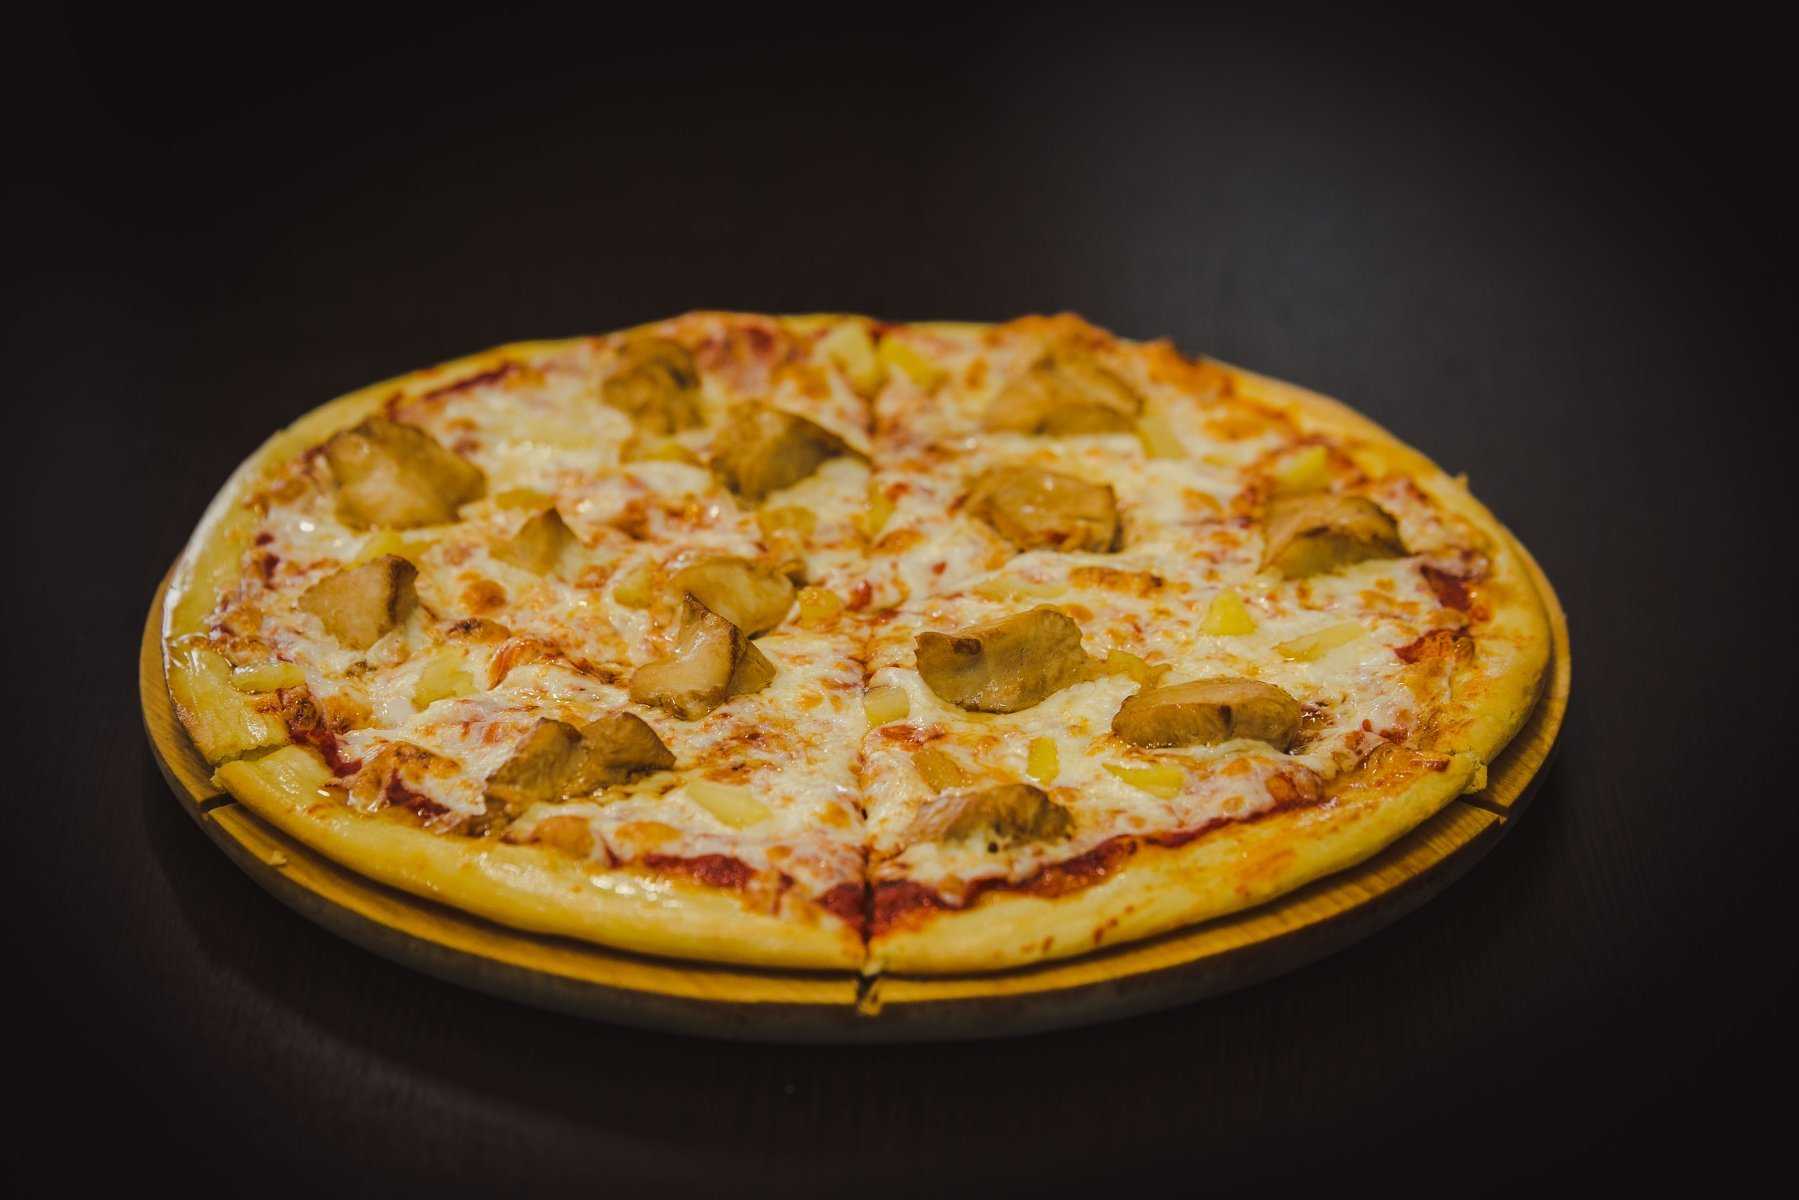 рецепт пиццы 4 сыра по итальянски фото 93